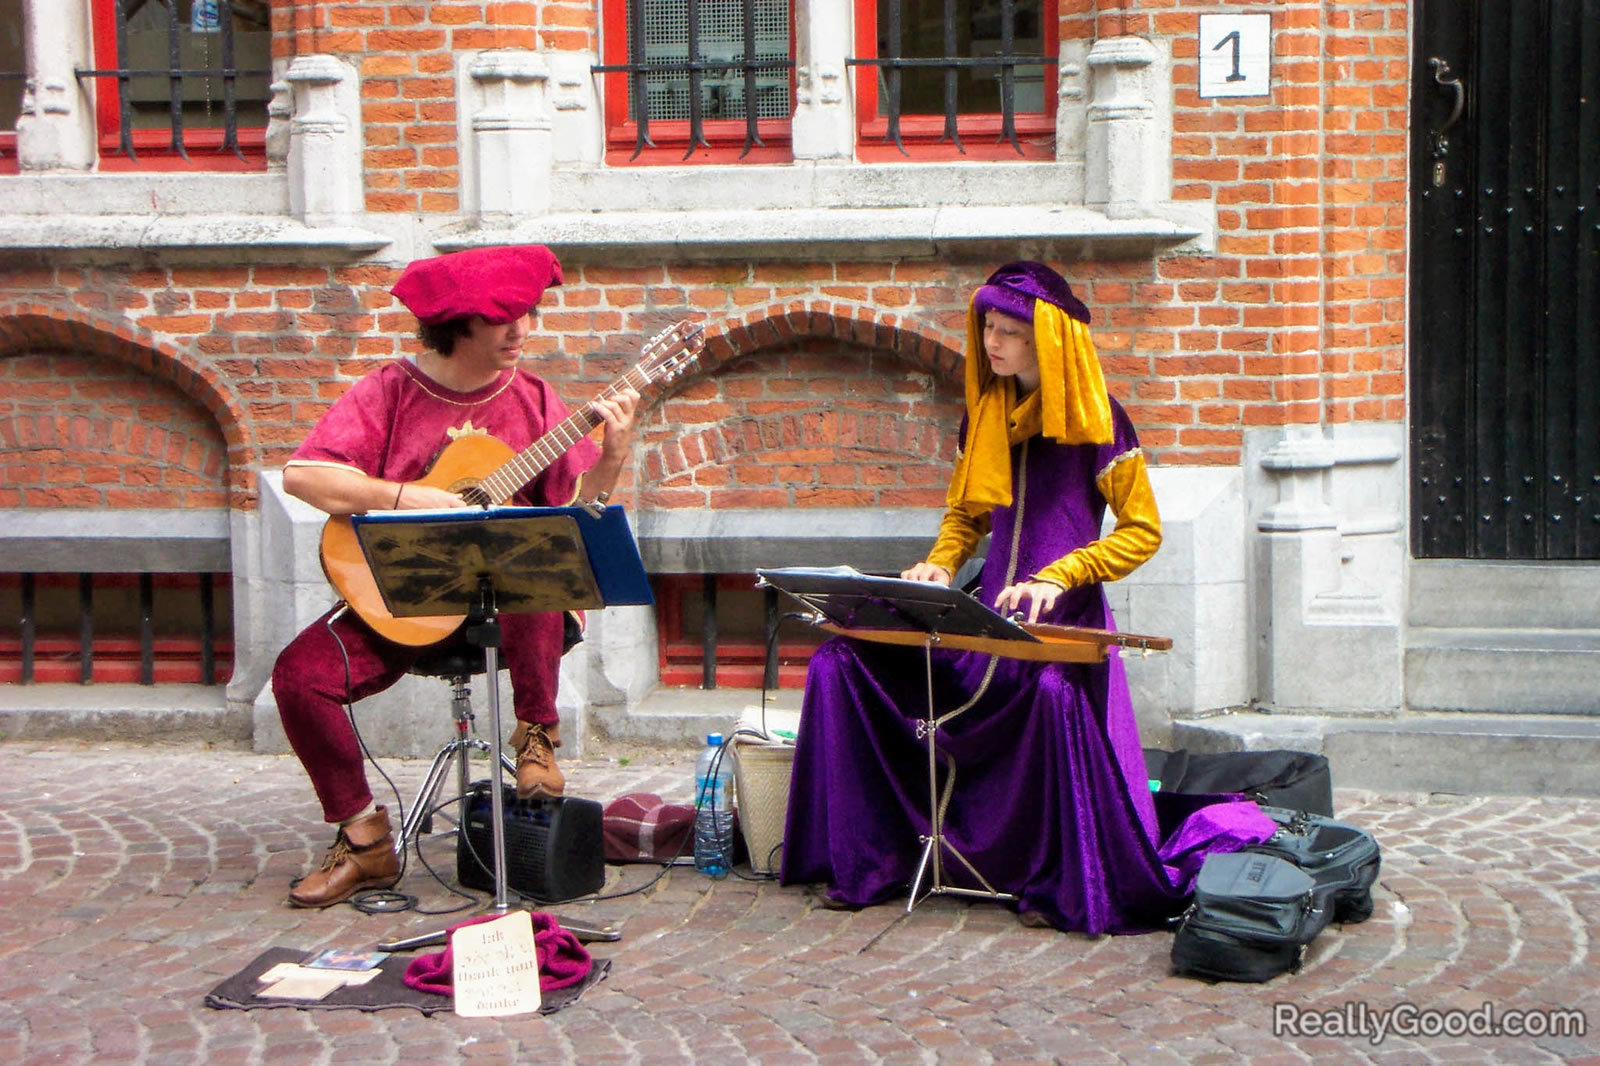 Street performers in Estonia